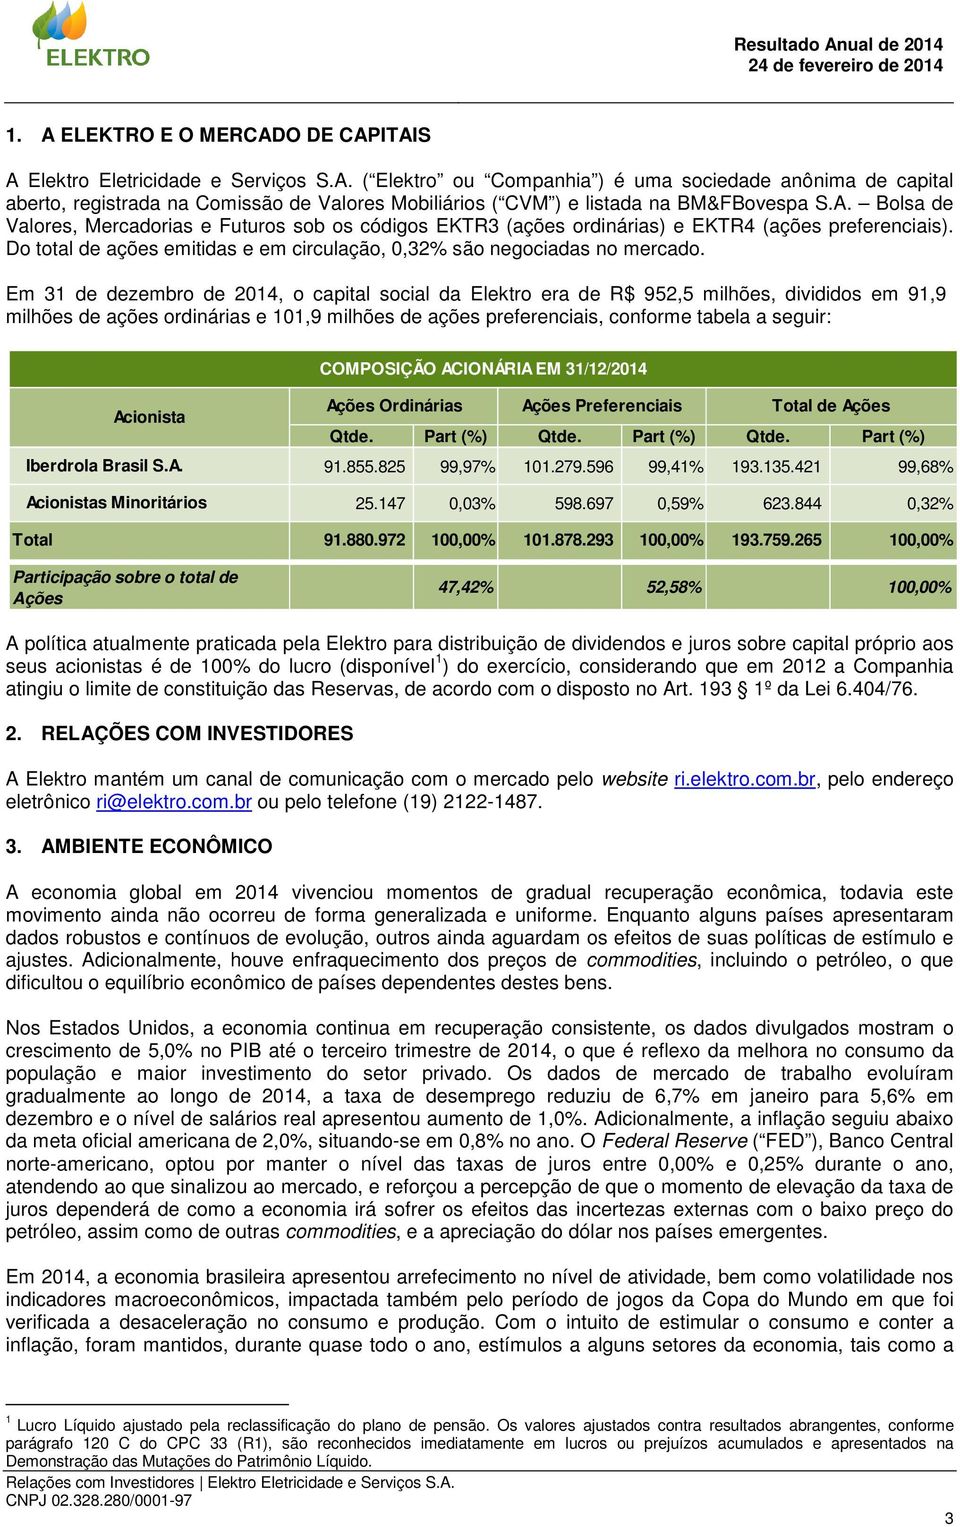 Em 31 de dezembro de 2014, o capital social da Elektro era de R$ 952,5 milhões, divididos em 91,9 milhões de ações ordinárias e 101,9 milhões de ações preferenciais, conforme tabela a seguir: